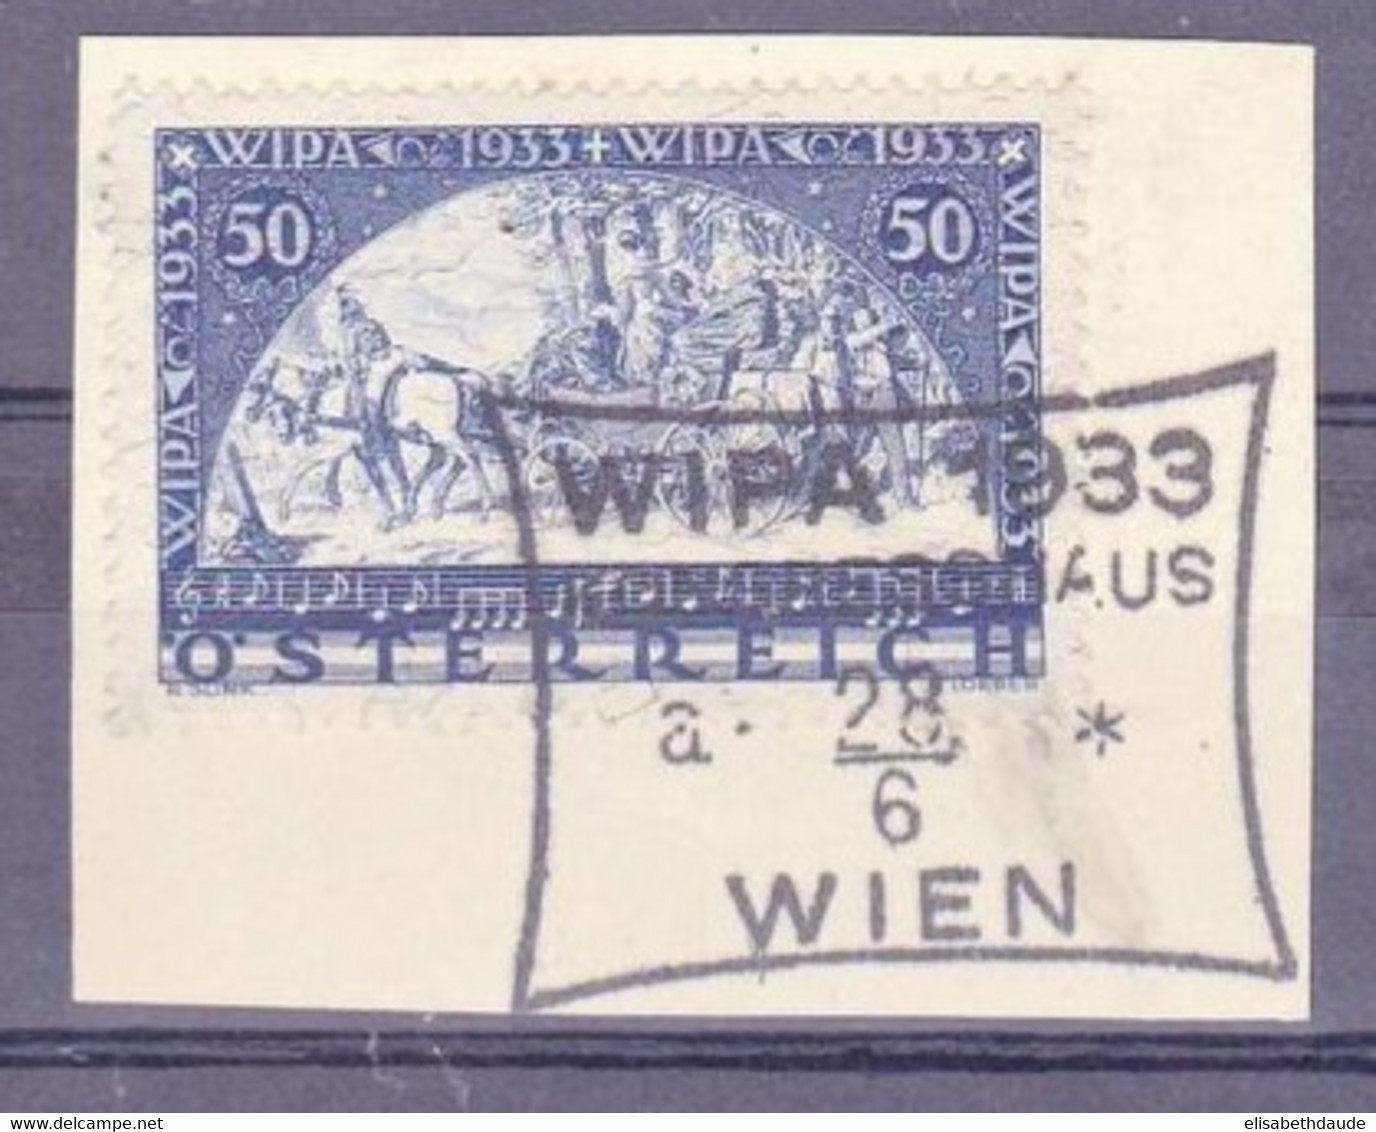 AUTRICHE - 1933 - YVERT N° 430a Avec FILS DE SOIE Sur FRAGMENT Avec OBLITERATION WIPA 1933 - COTE : 725 EUROS+++ - Used Stamps